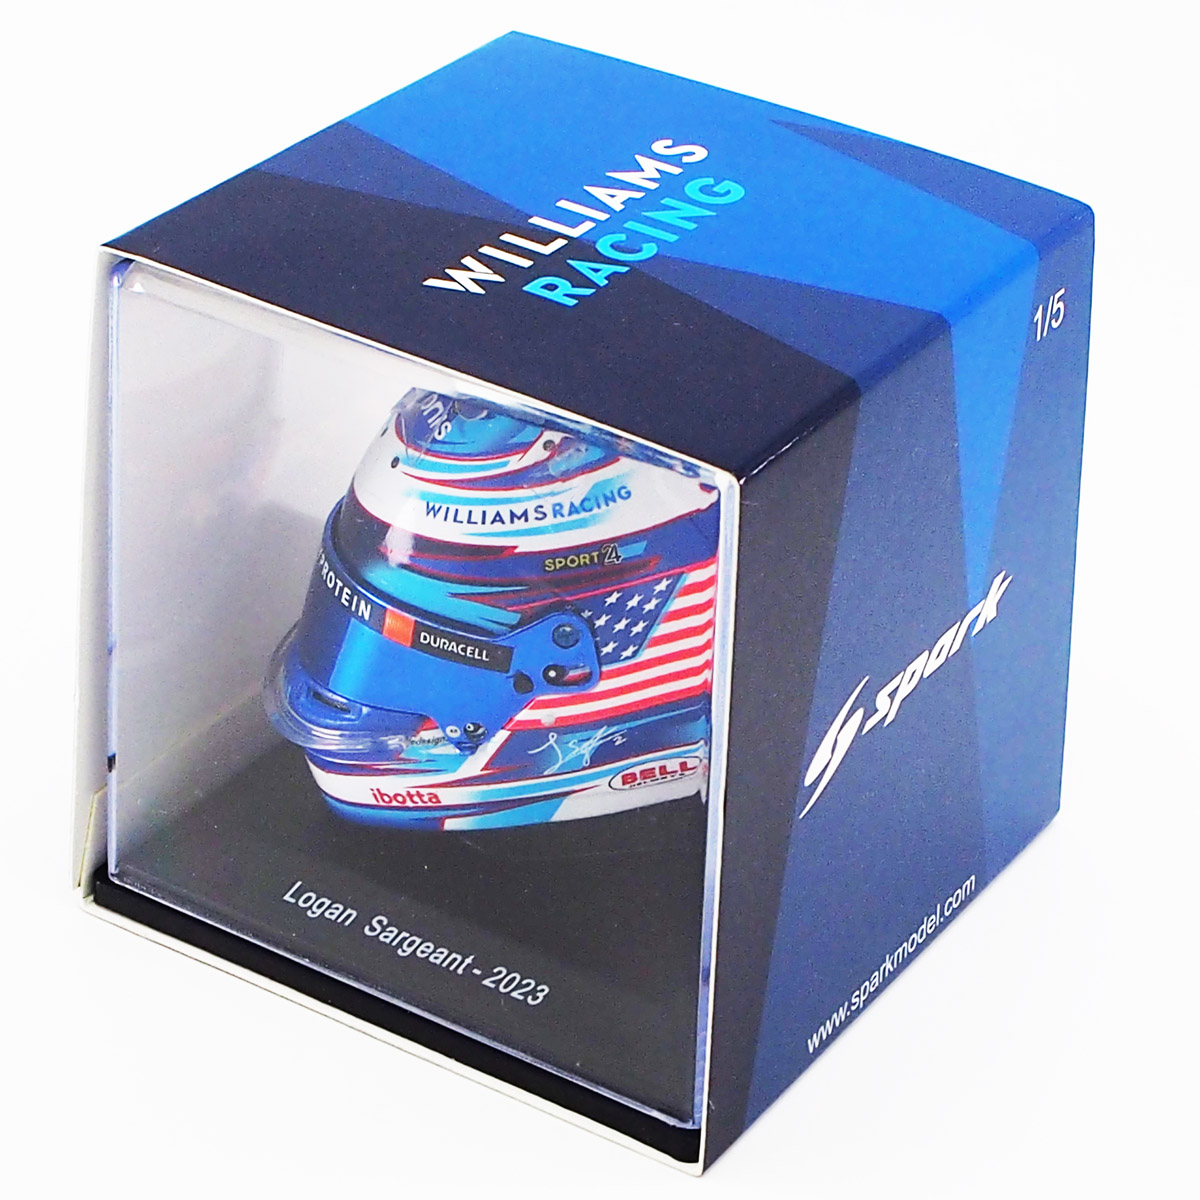 スパーク 1/5 スケール ヘルメット 2023年 ウィリアムズ レーシング ローガン サージェント画像